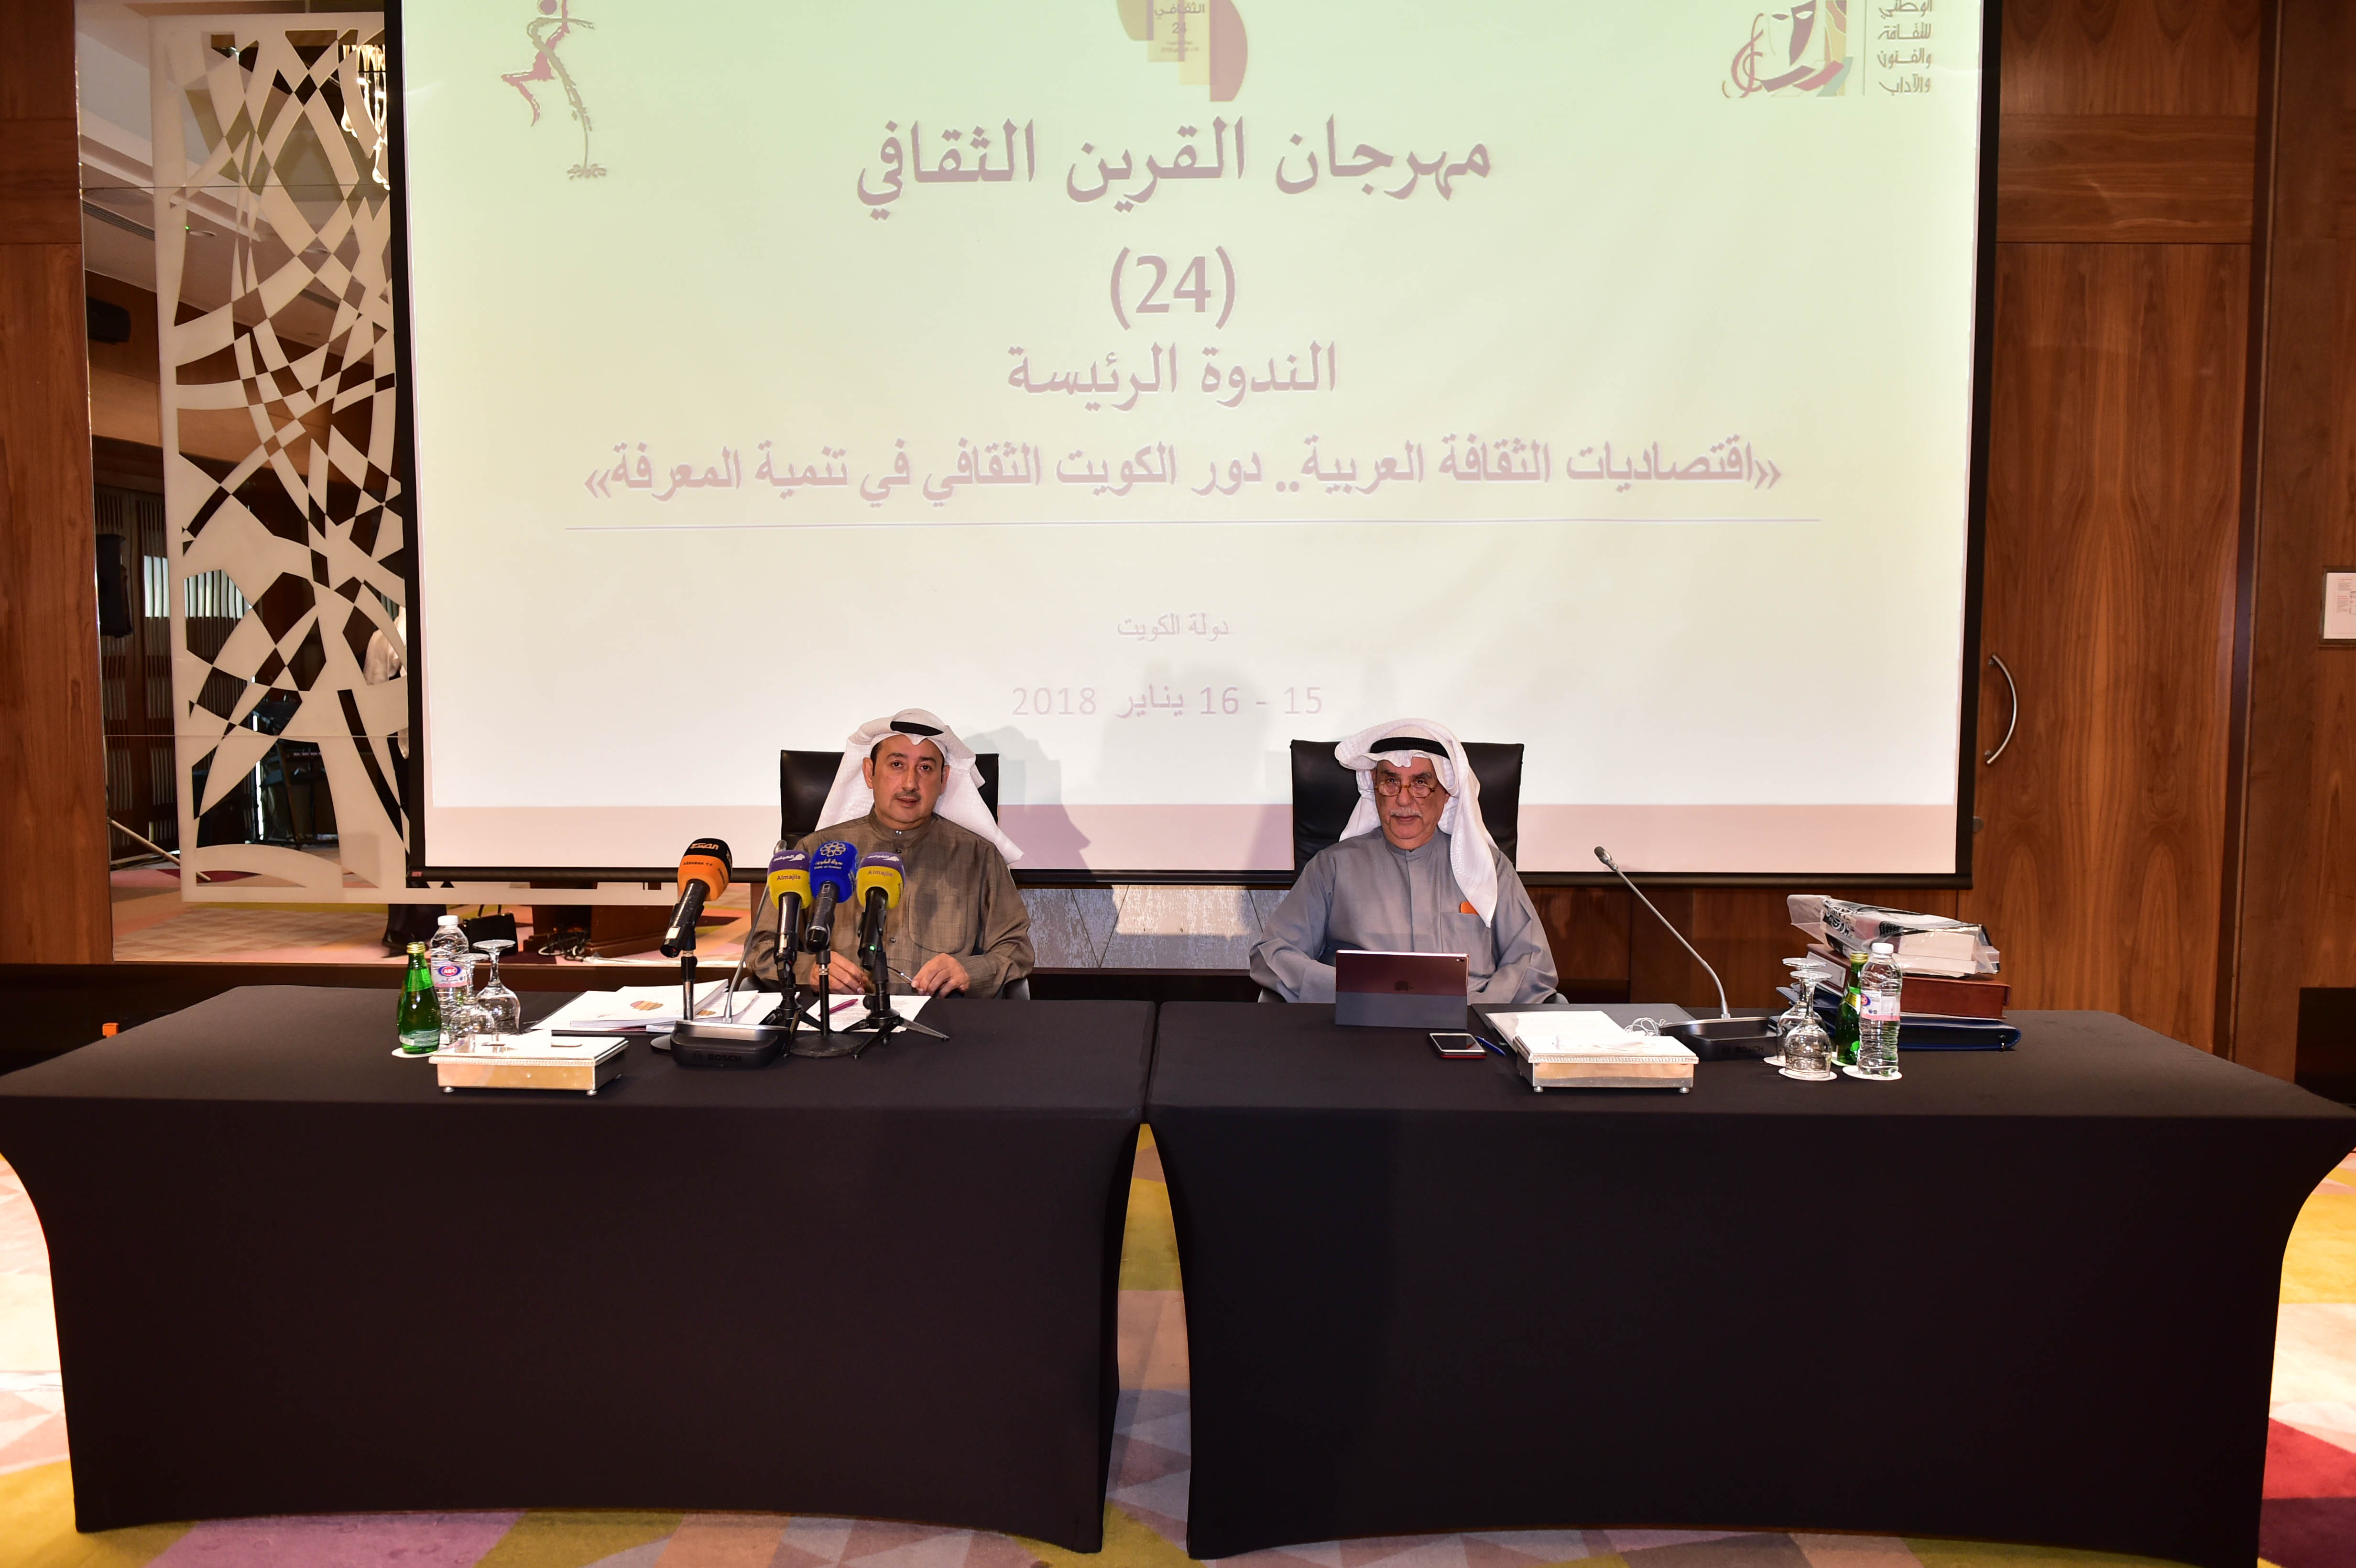 افتتاح الندوة الرئيسية للدورة ال24 من مهرجان القرين الثقافي بعنوان (اقتصاديات الثقافة العربية ودور الكويت الثقافي في تنمية المعرفة)